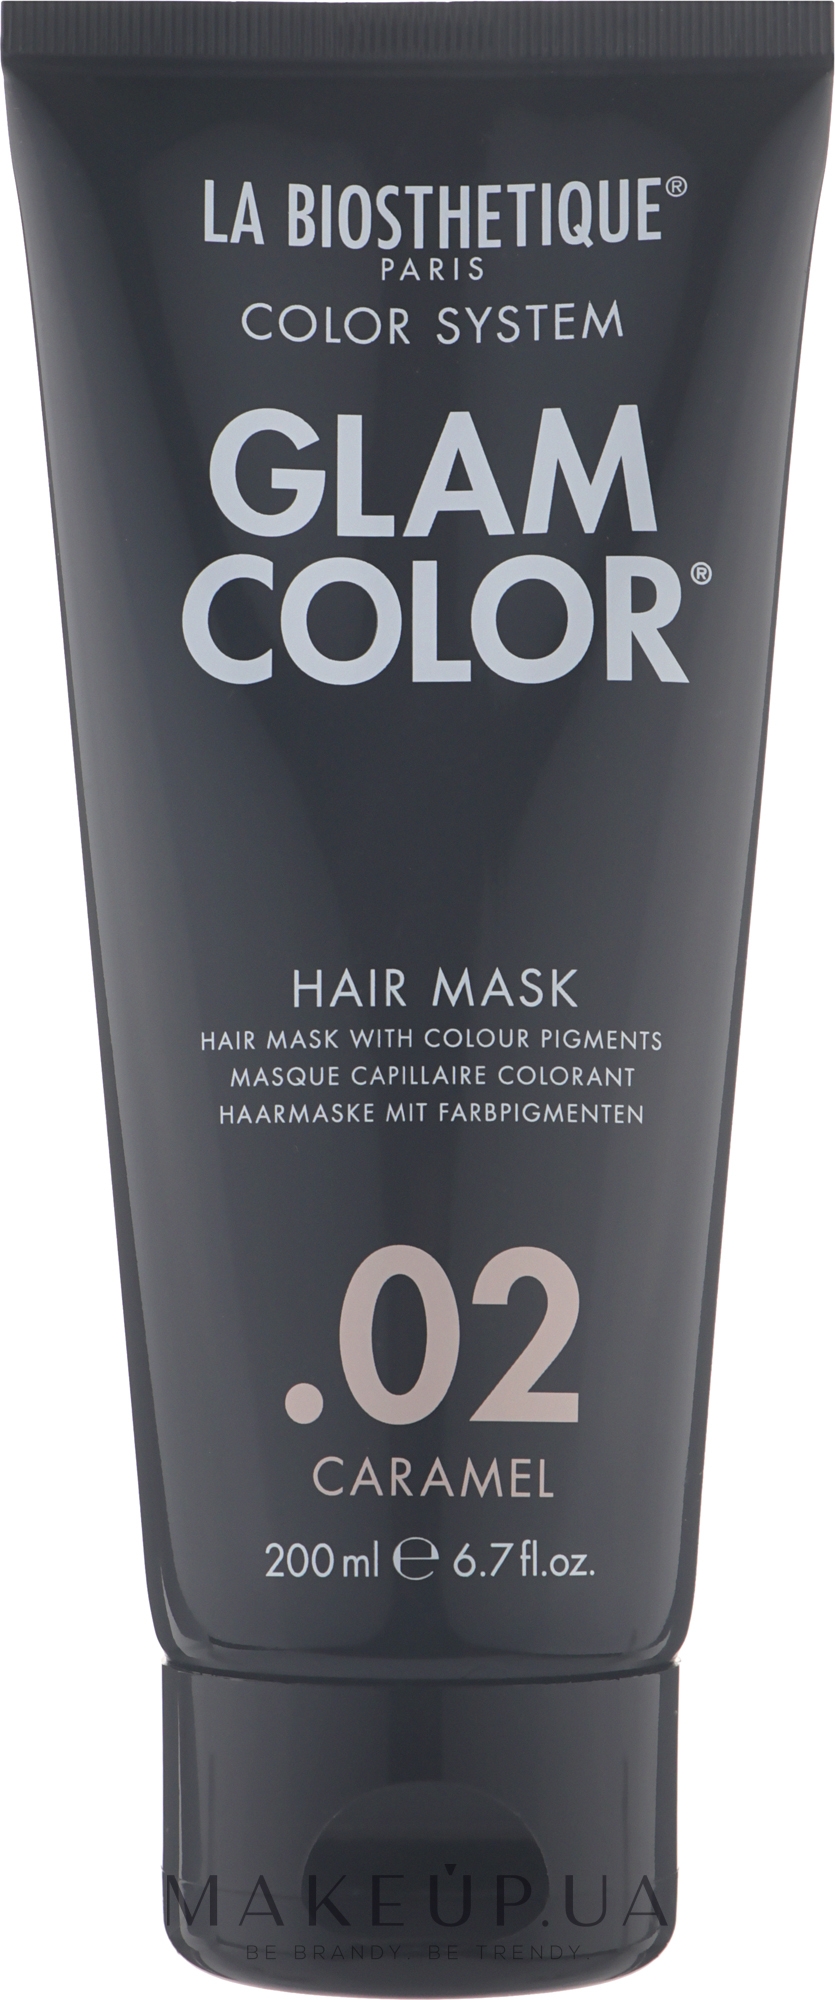 Тонирующая маска для волос - La Biosthetique Glam Color Hair Mask — фото 02 - Caramel